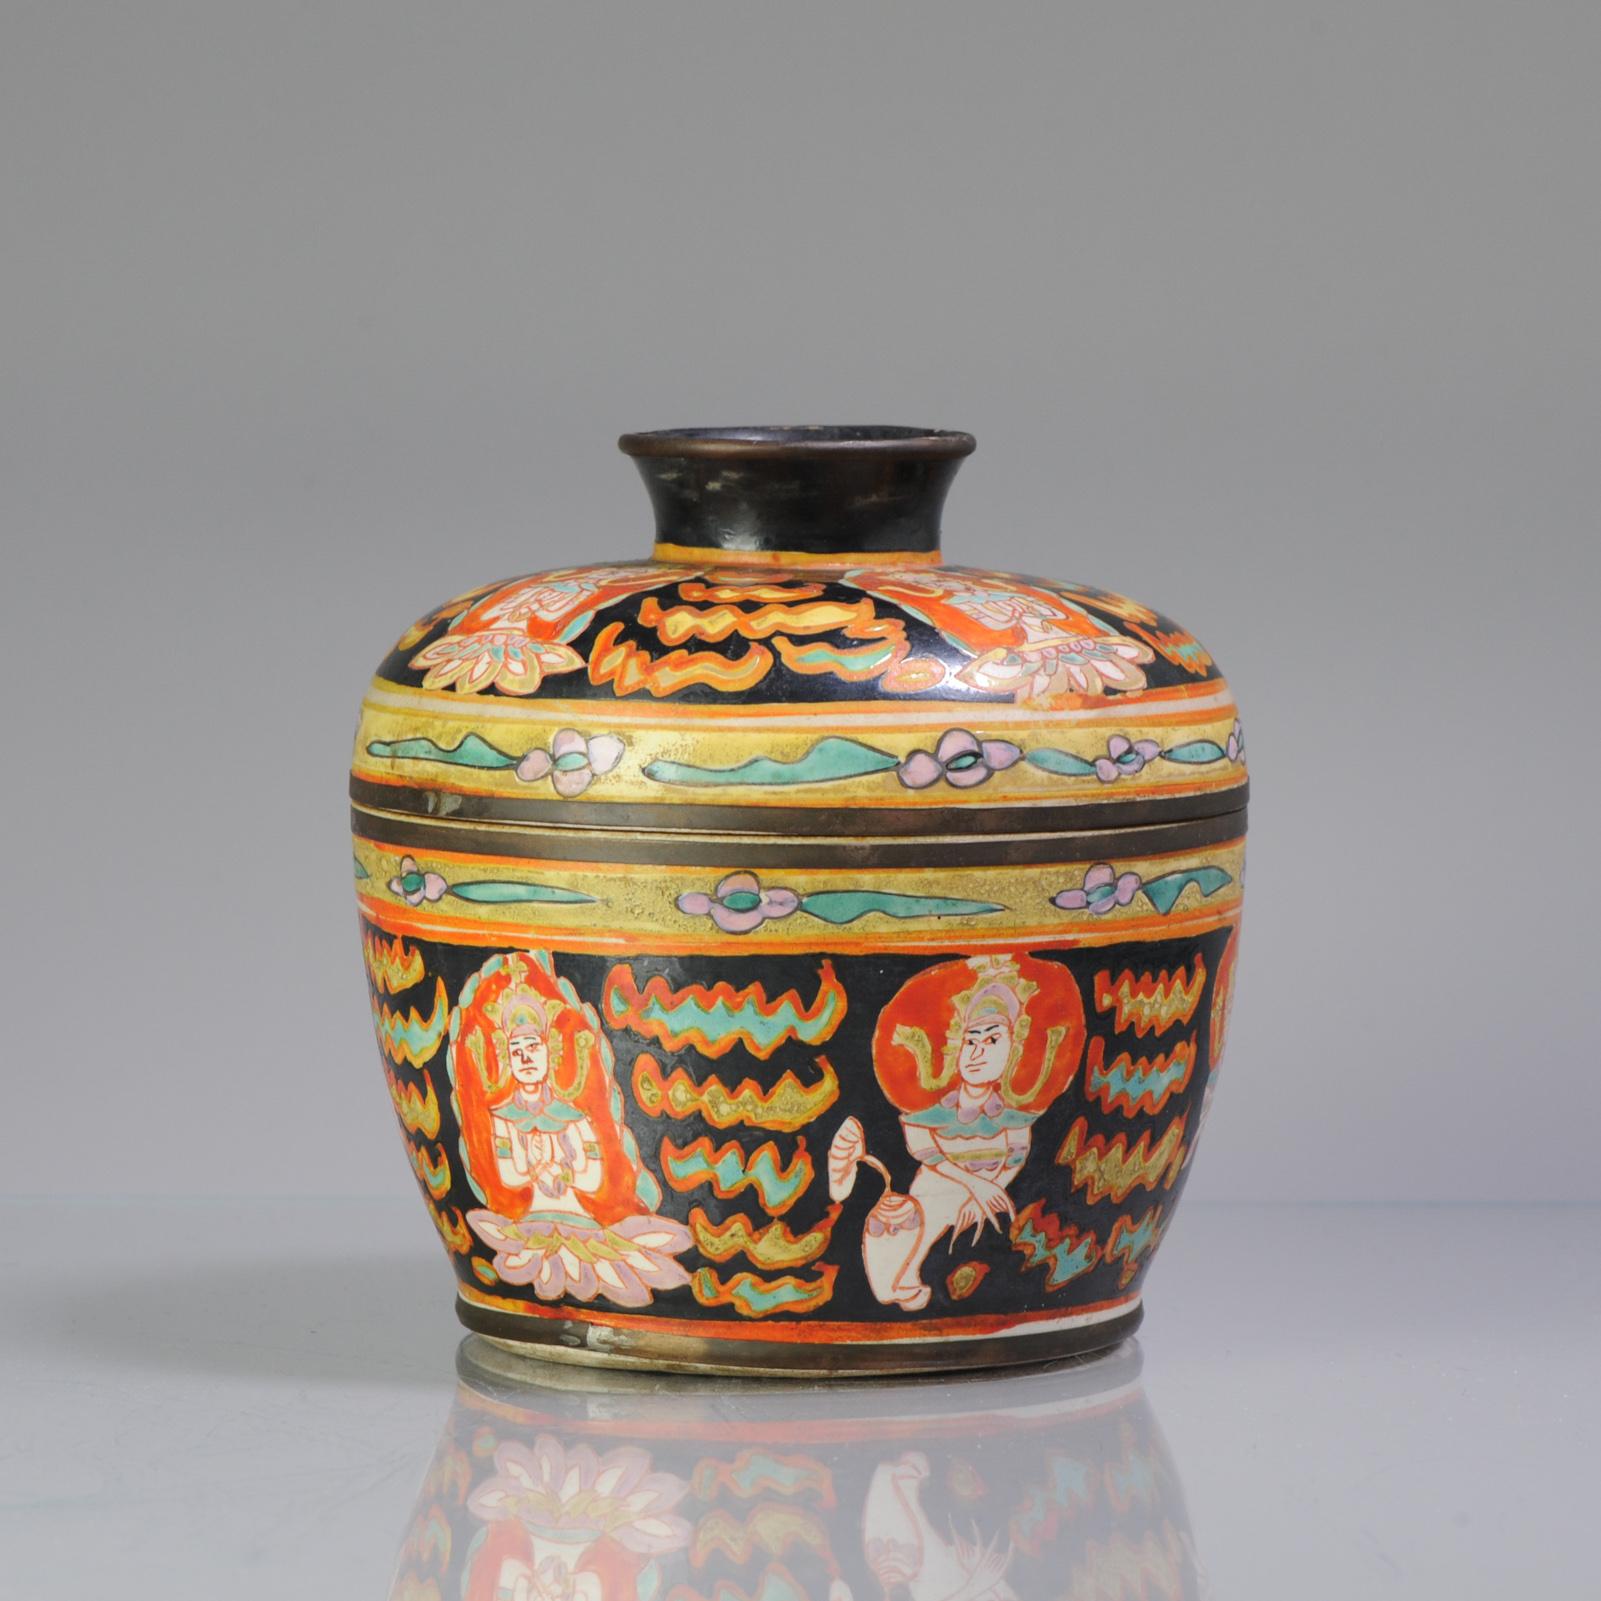 Antique Ca 1900 Chinese Porcelain Lidded Jar Bencharong Thailand Enamels 1